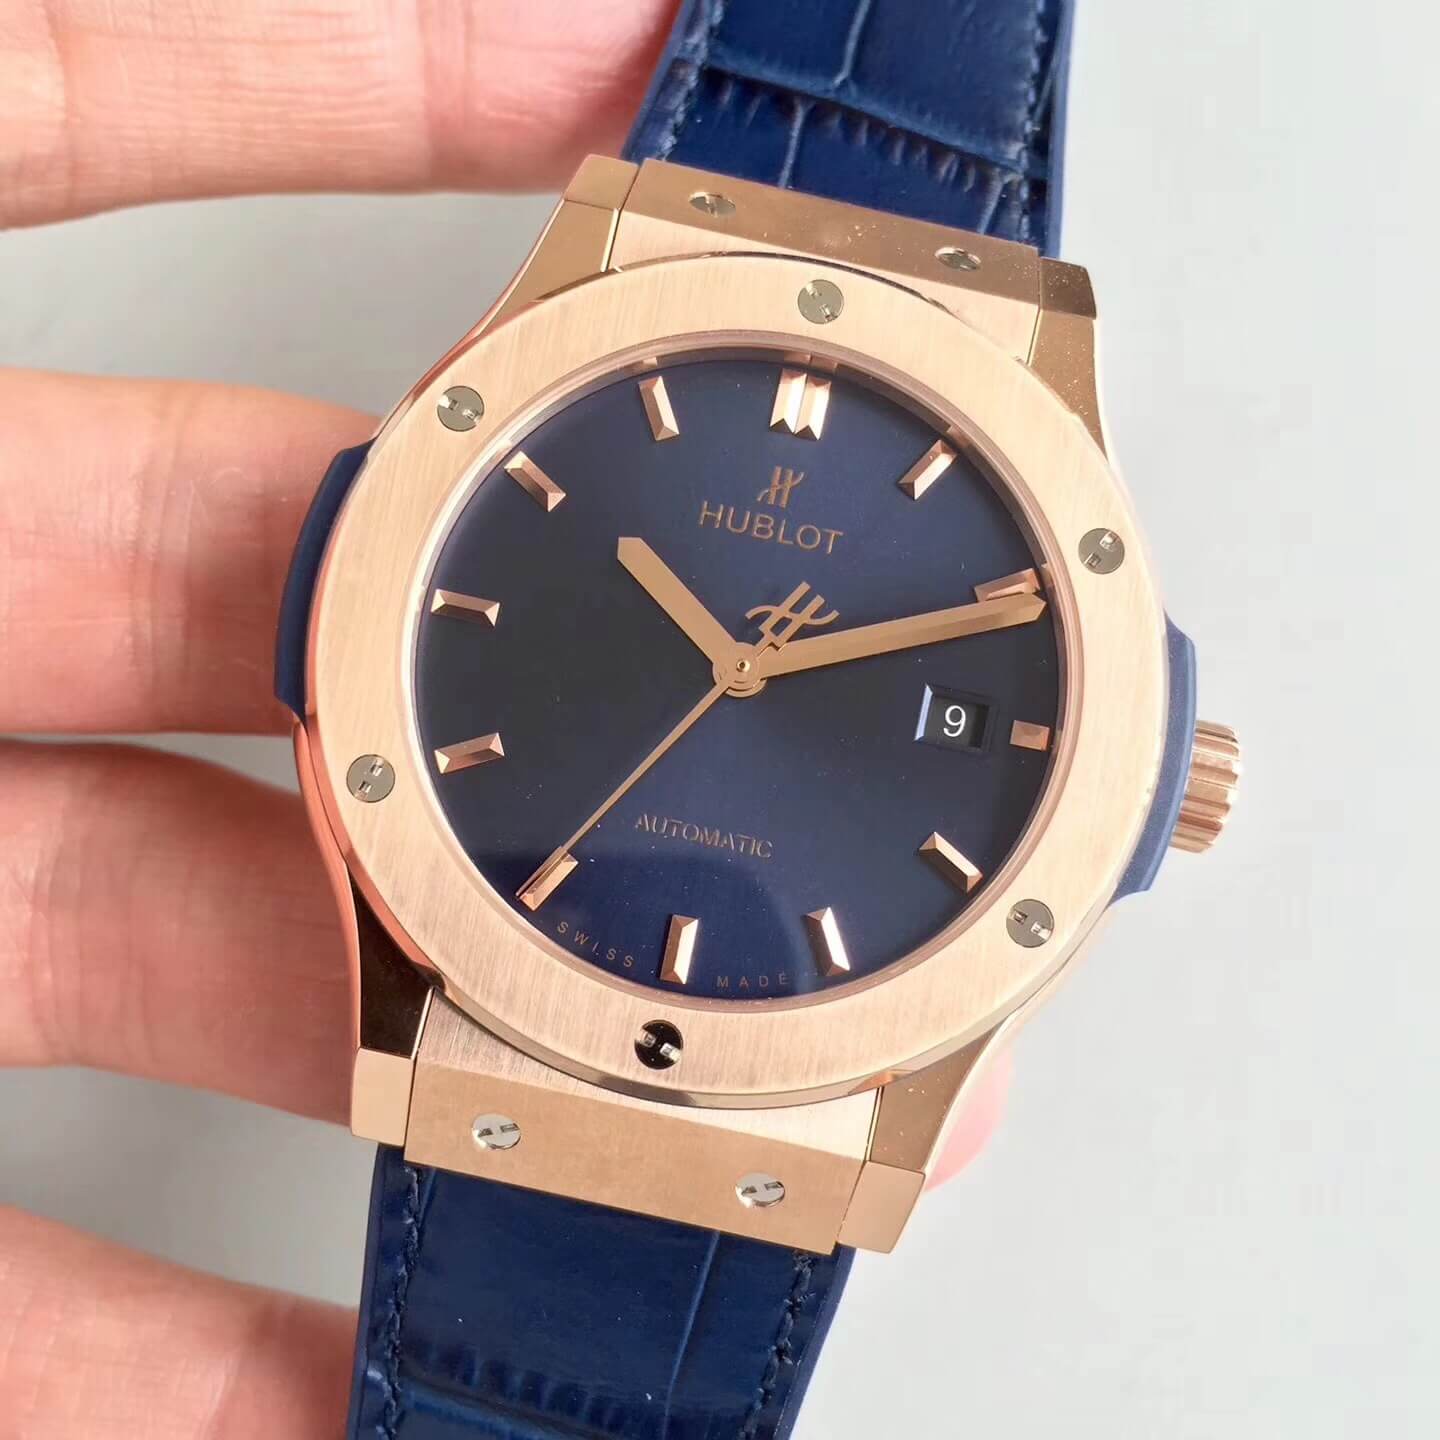 Đồng hồ nam nữ Hubblot bản mặt xanh viền vàng máy cơ 100% cao cấp A+ sz 40 42 hộp da + kèm ảnh thật (Luxury Watches)) thumbnail